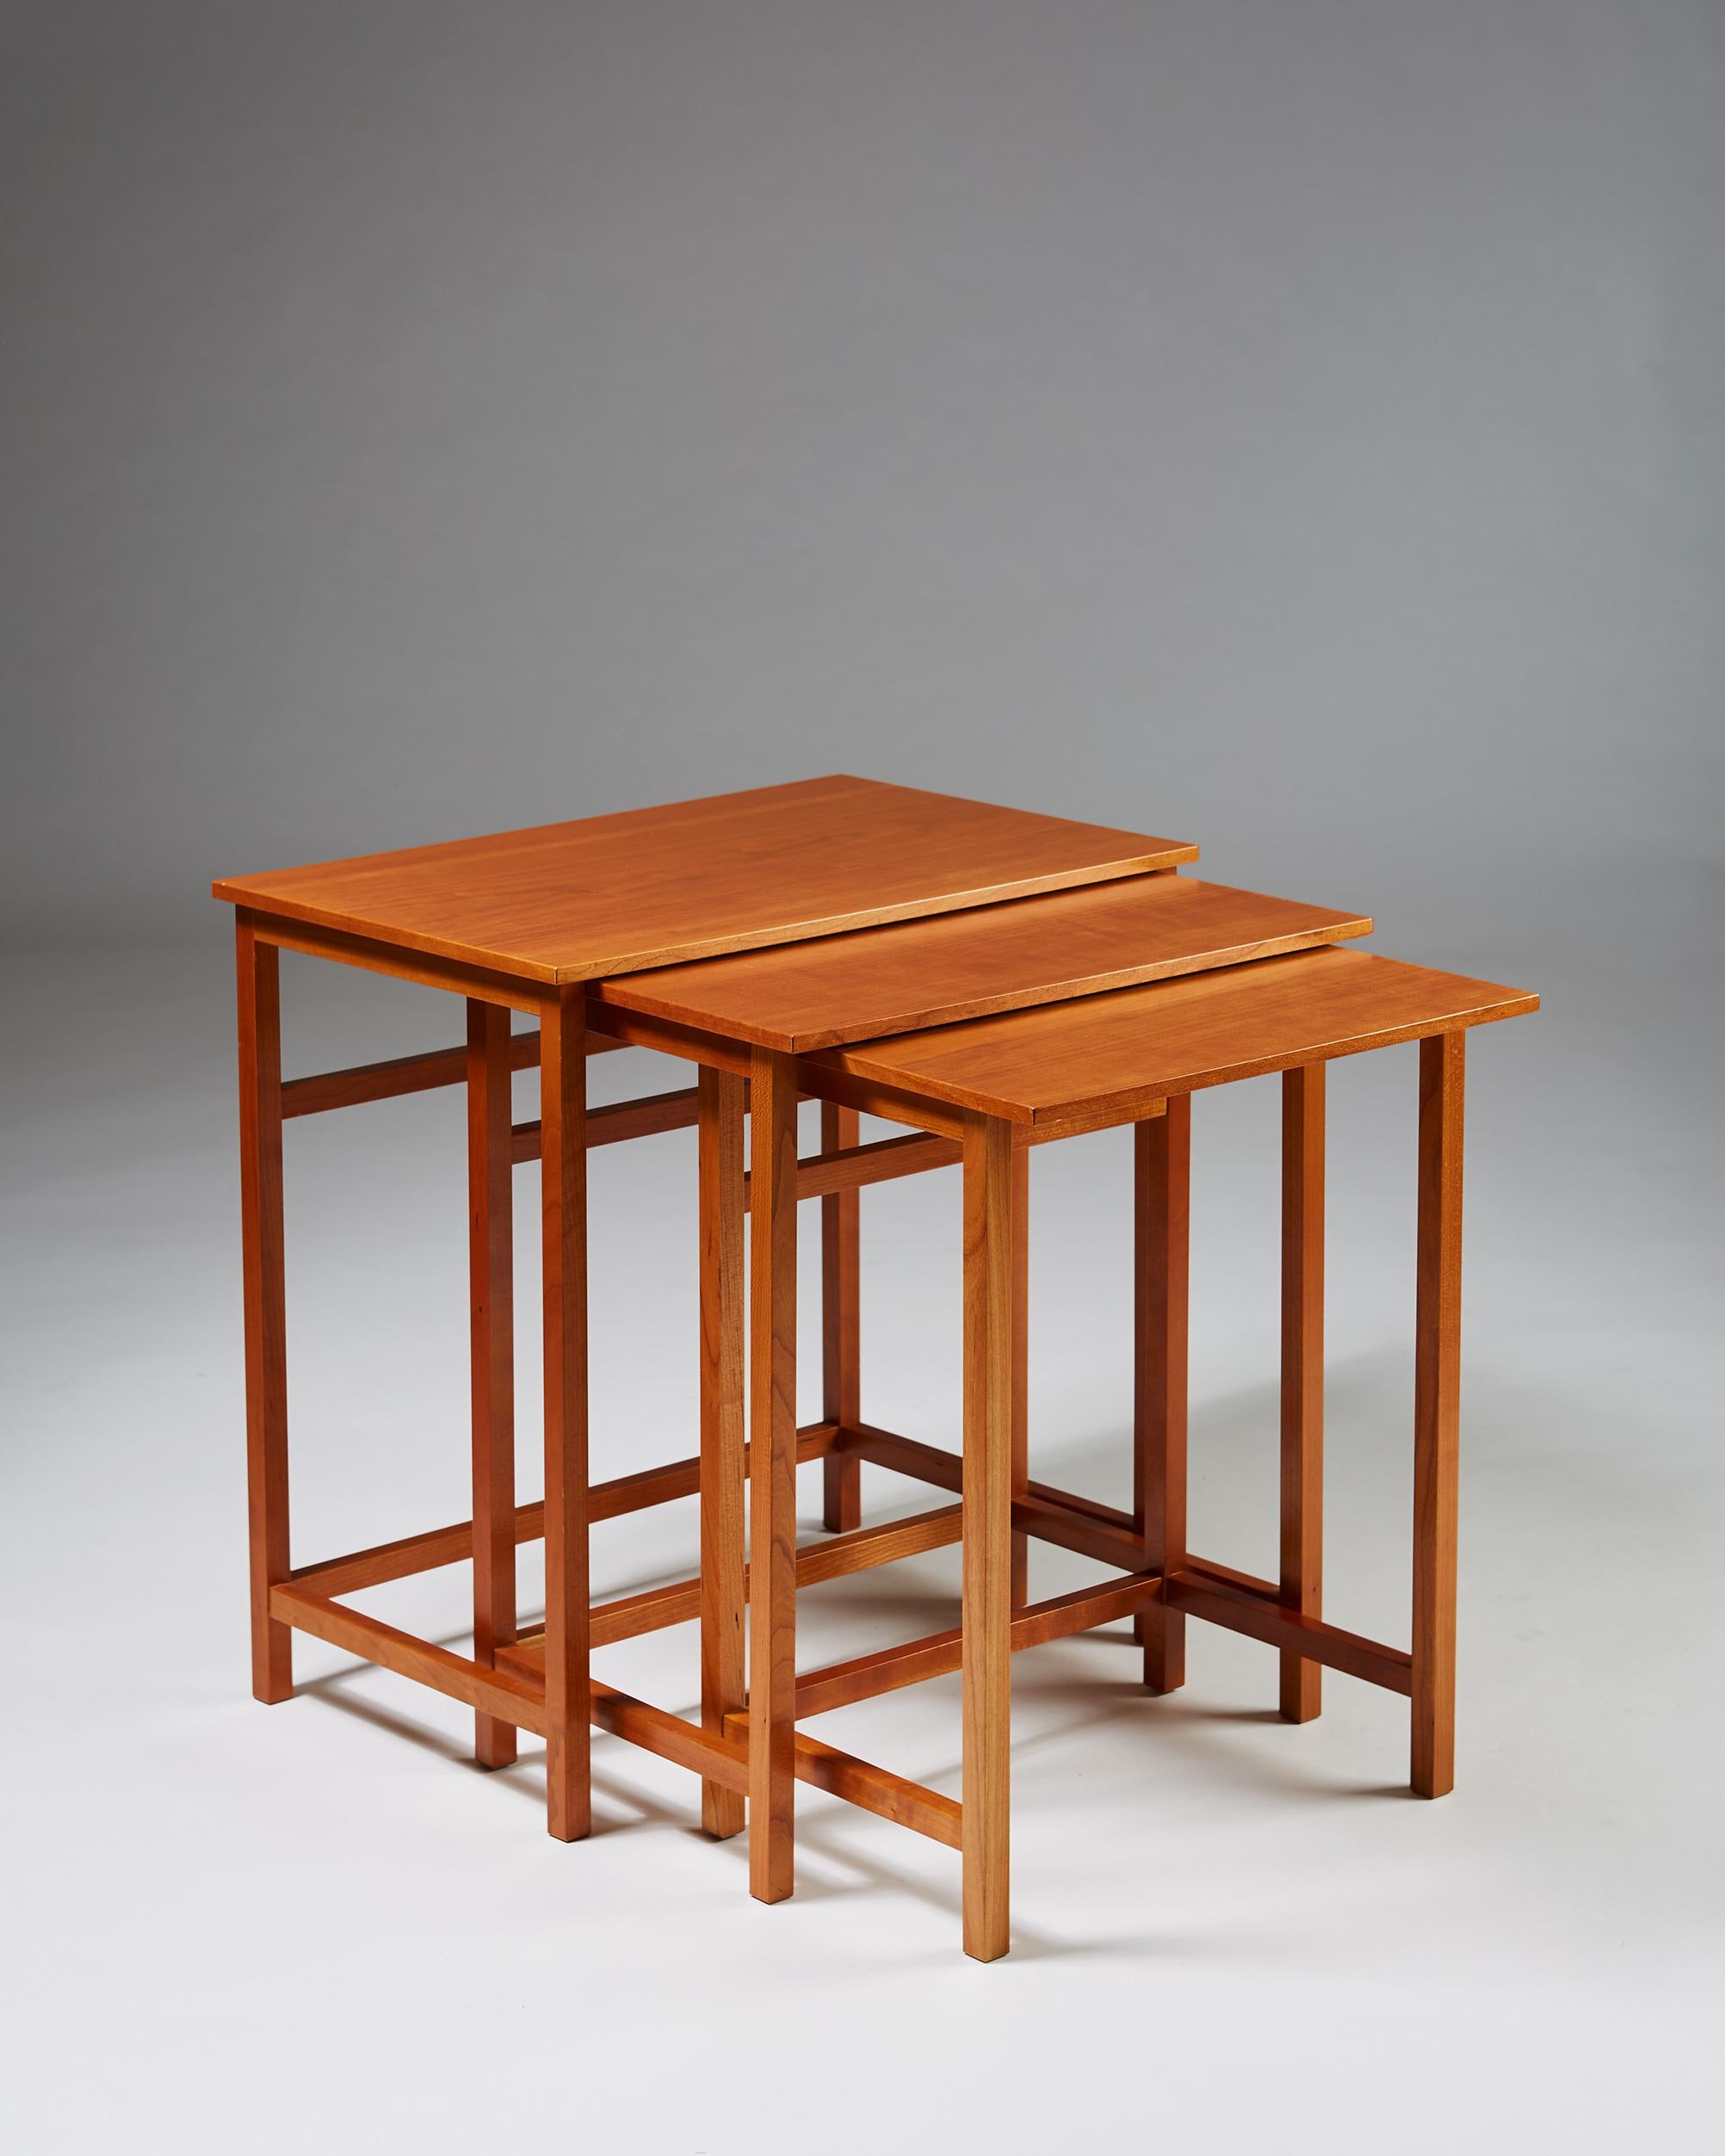 Nest of tables Model 618 designed by Josef Frank for Svenkst Tenn, Sweden, 1950. Cherry.

Stamped.

Measurements:
L: 55 cm/ 21 5/8